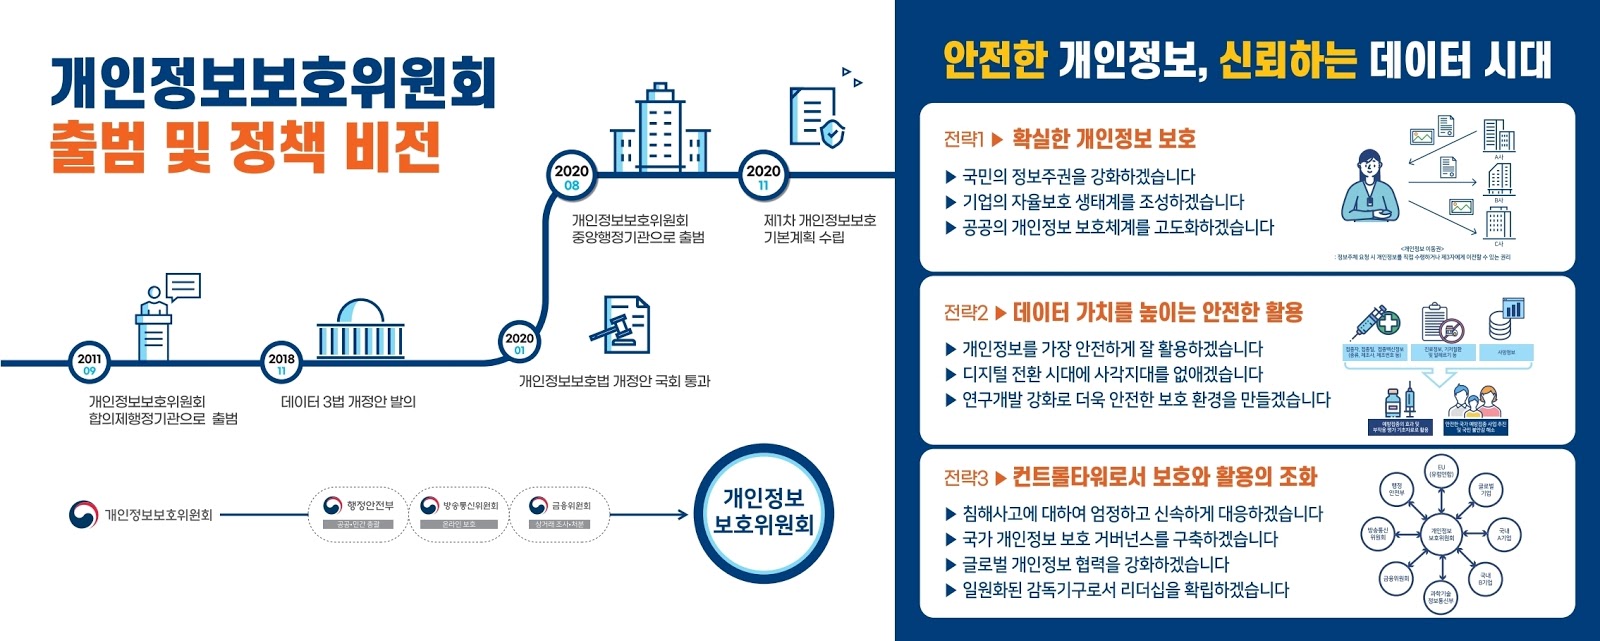 South Korean Privacy Strategy